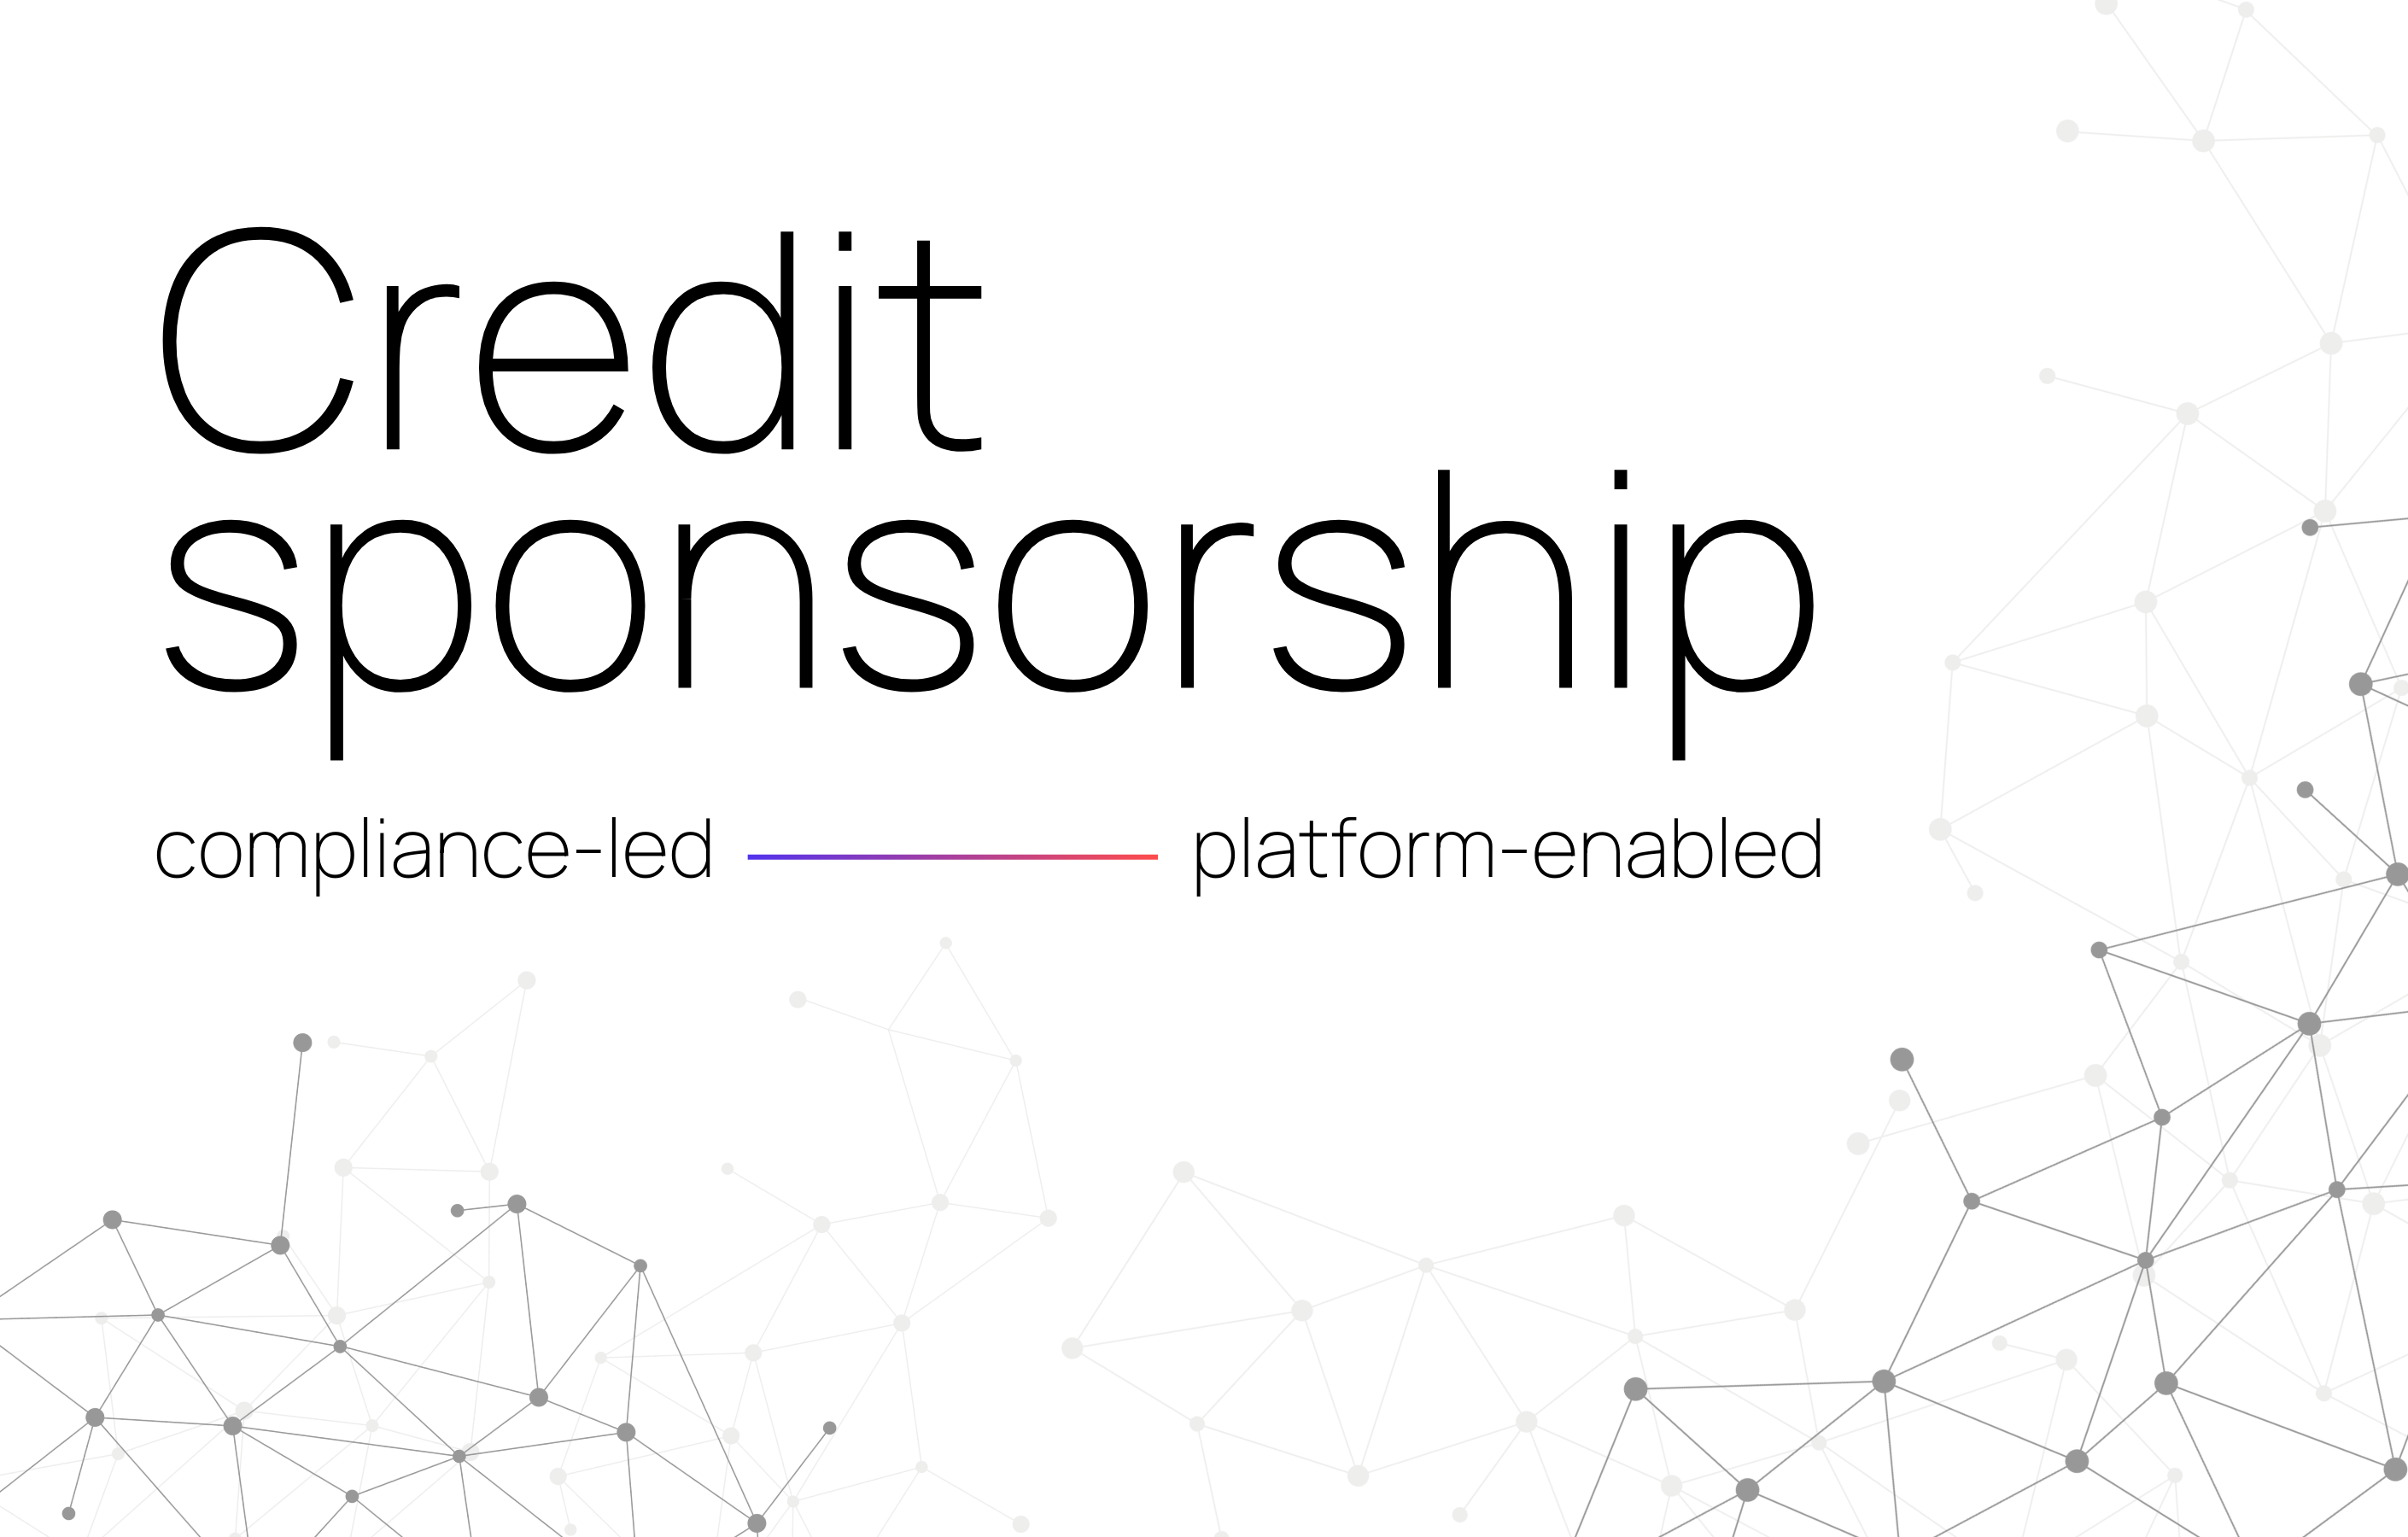 Compliance-led and platform-enabled credit sponsorship